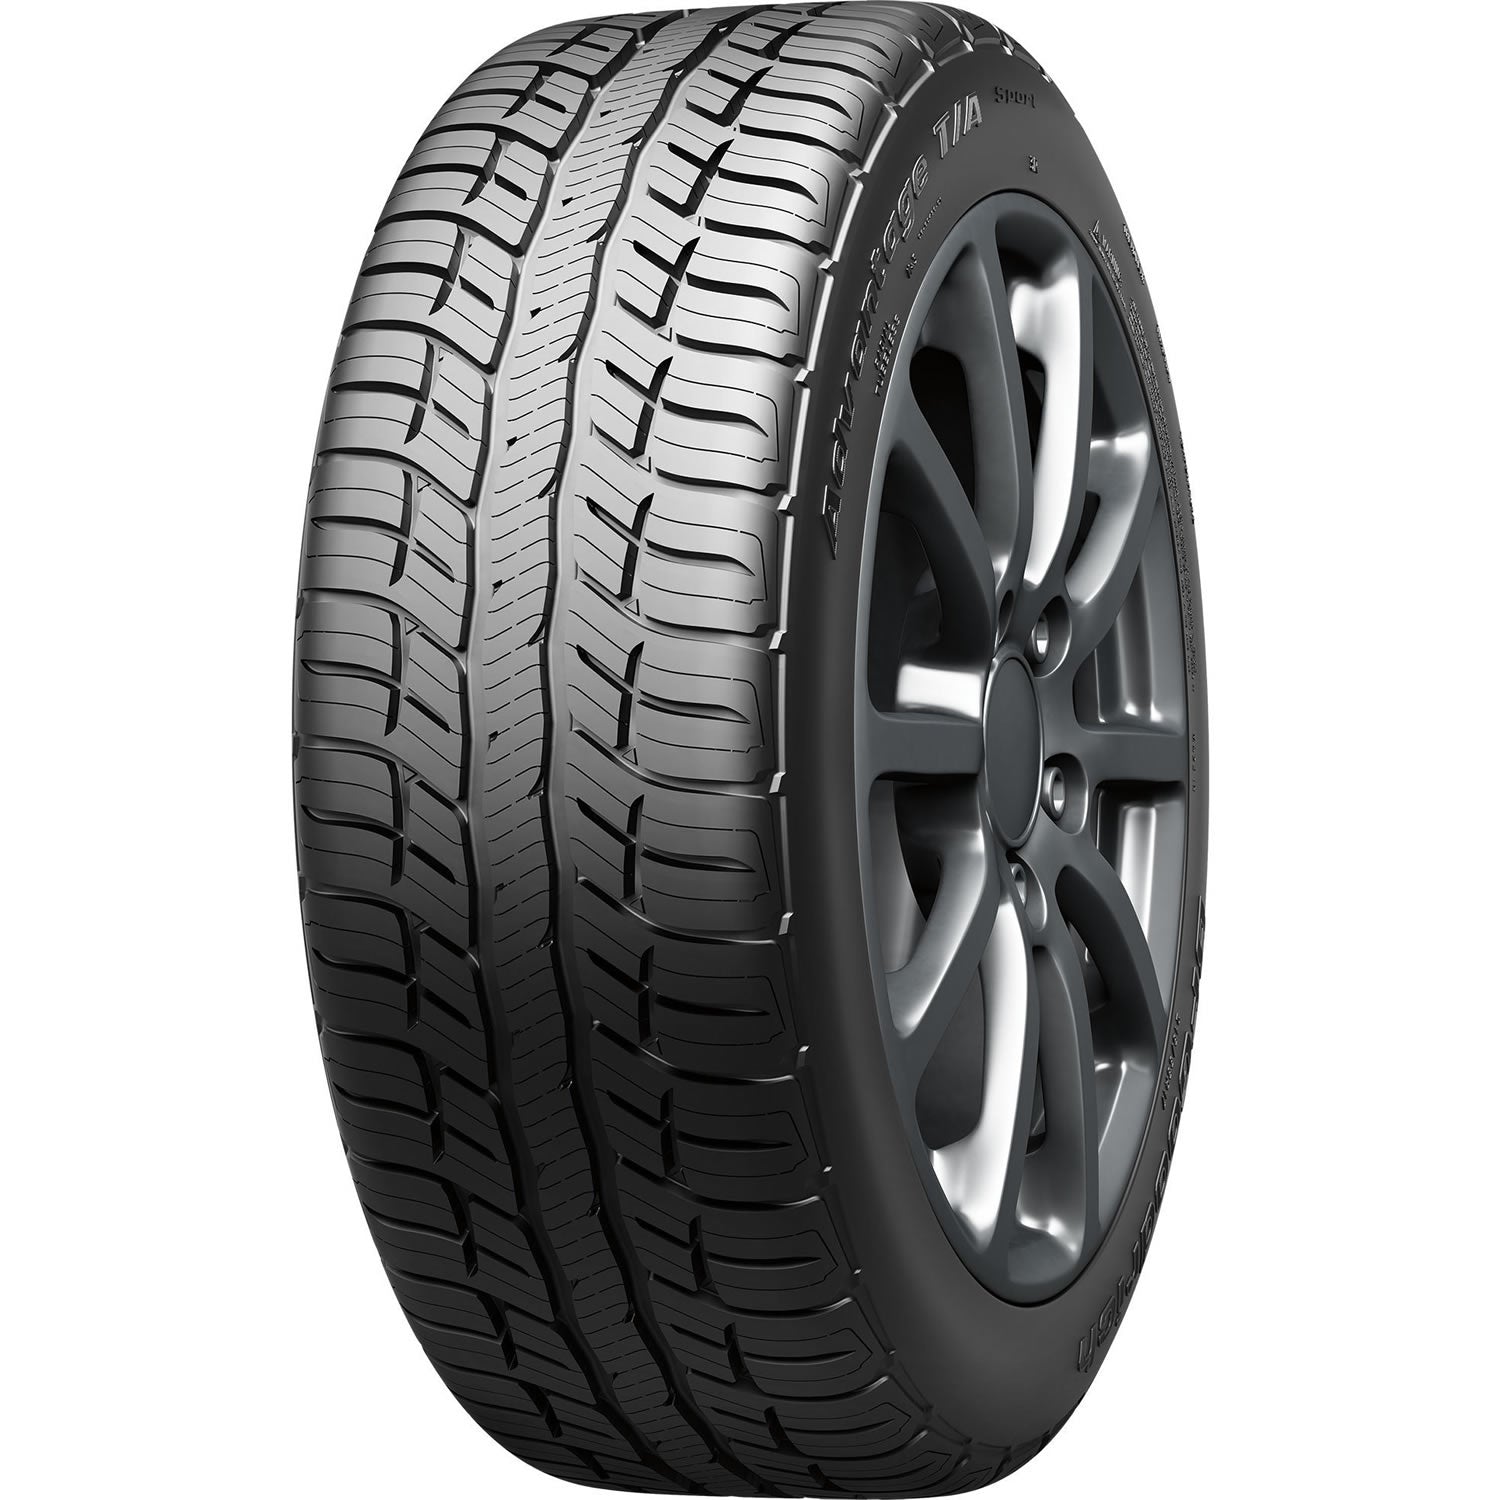 BFGOODRICH ADVANTAGE T/A SPORT 235/75R15 (28.9X9.3R 15) Tires